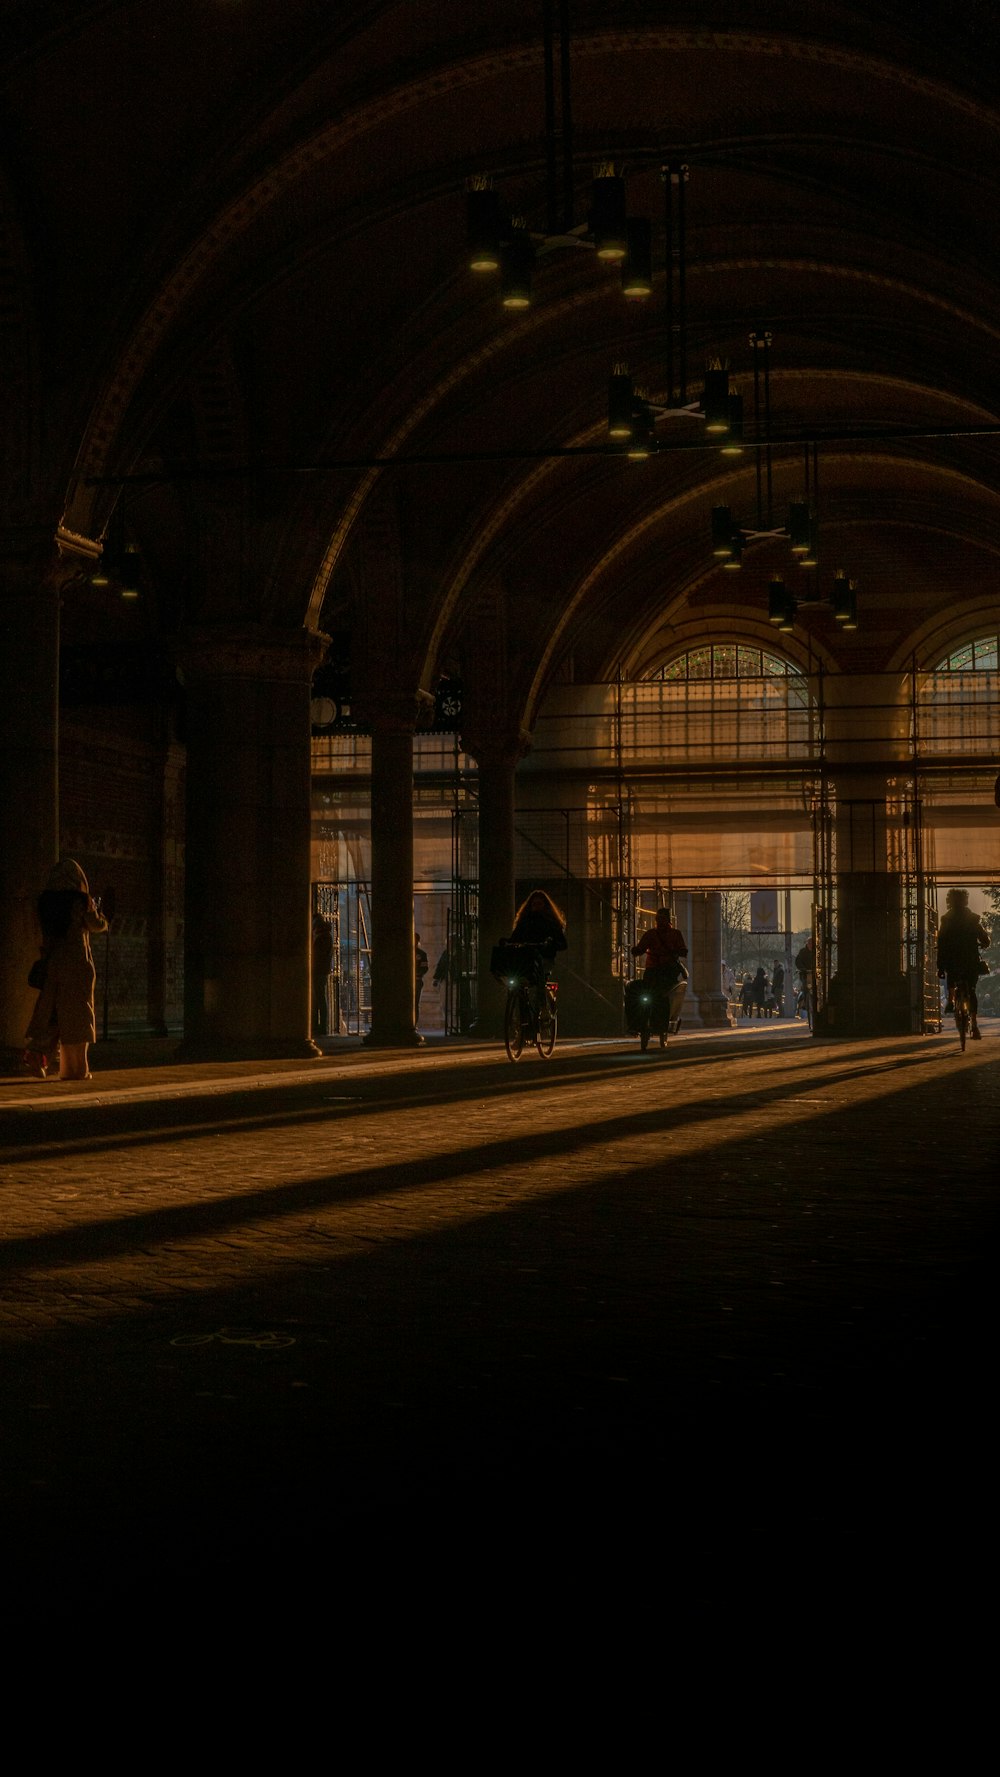 Un grupo de personas caminando por una estación de tren